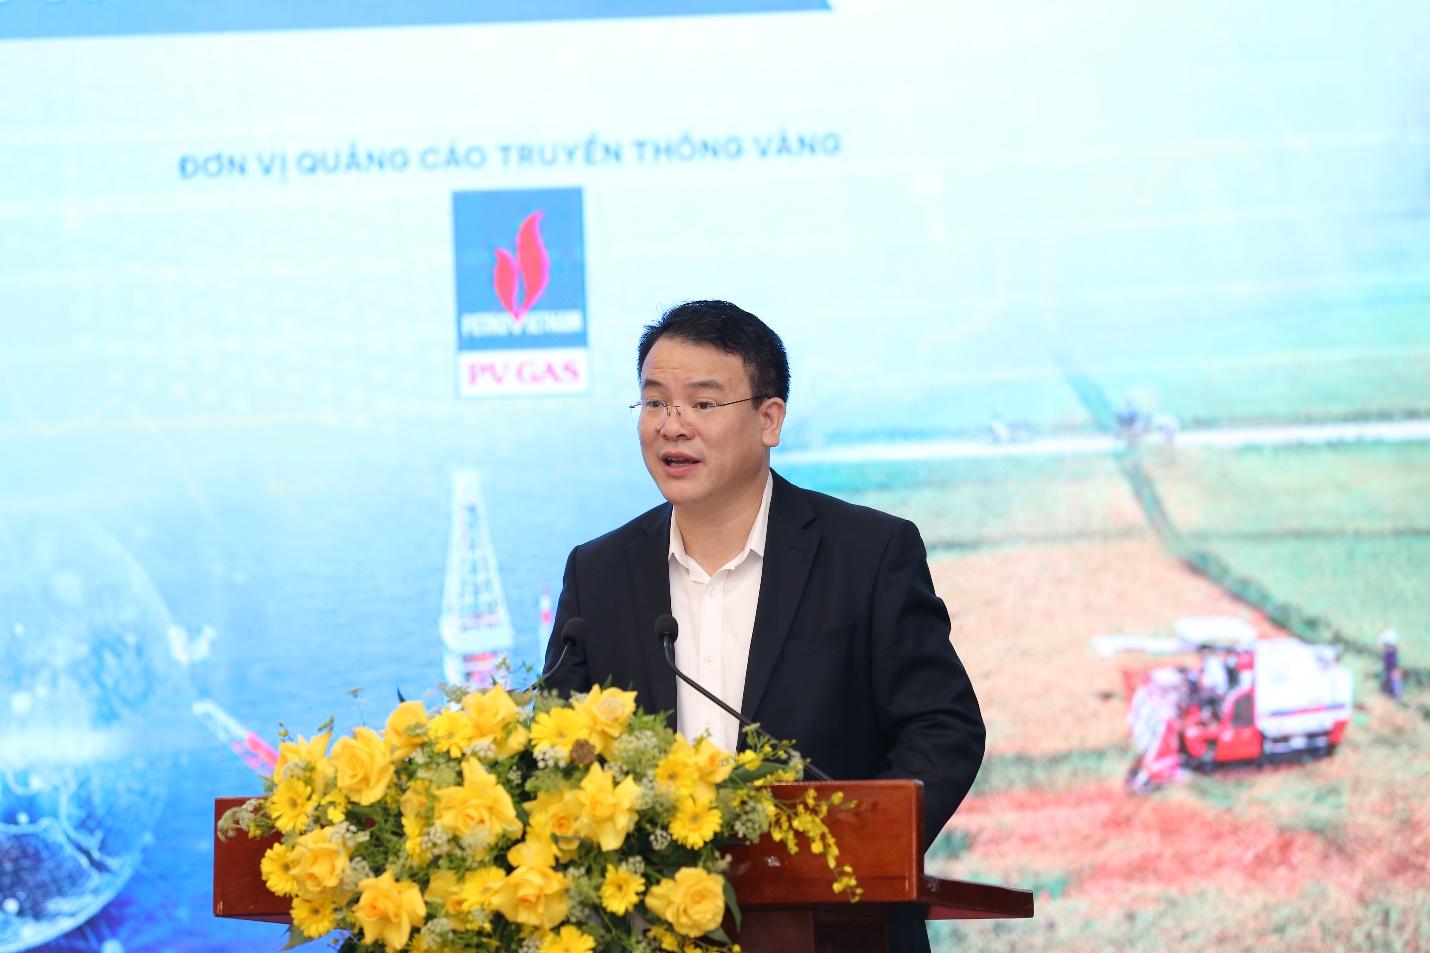 Dự báo kinh tế Việt Nam năm 2022-2023 nhìn từ những cơ hội, thách thức mới đối với các ngành kinh tế chính